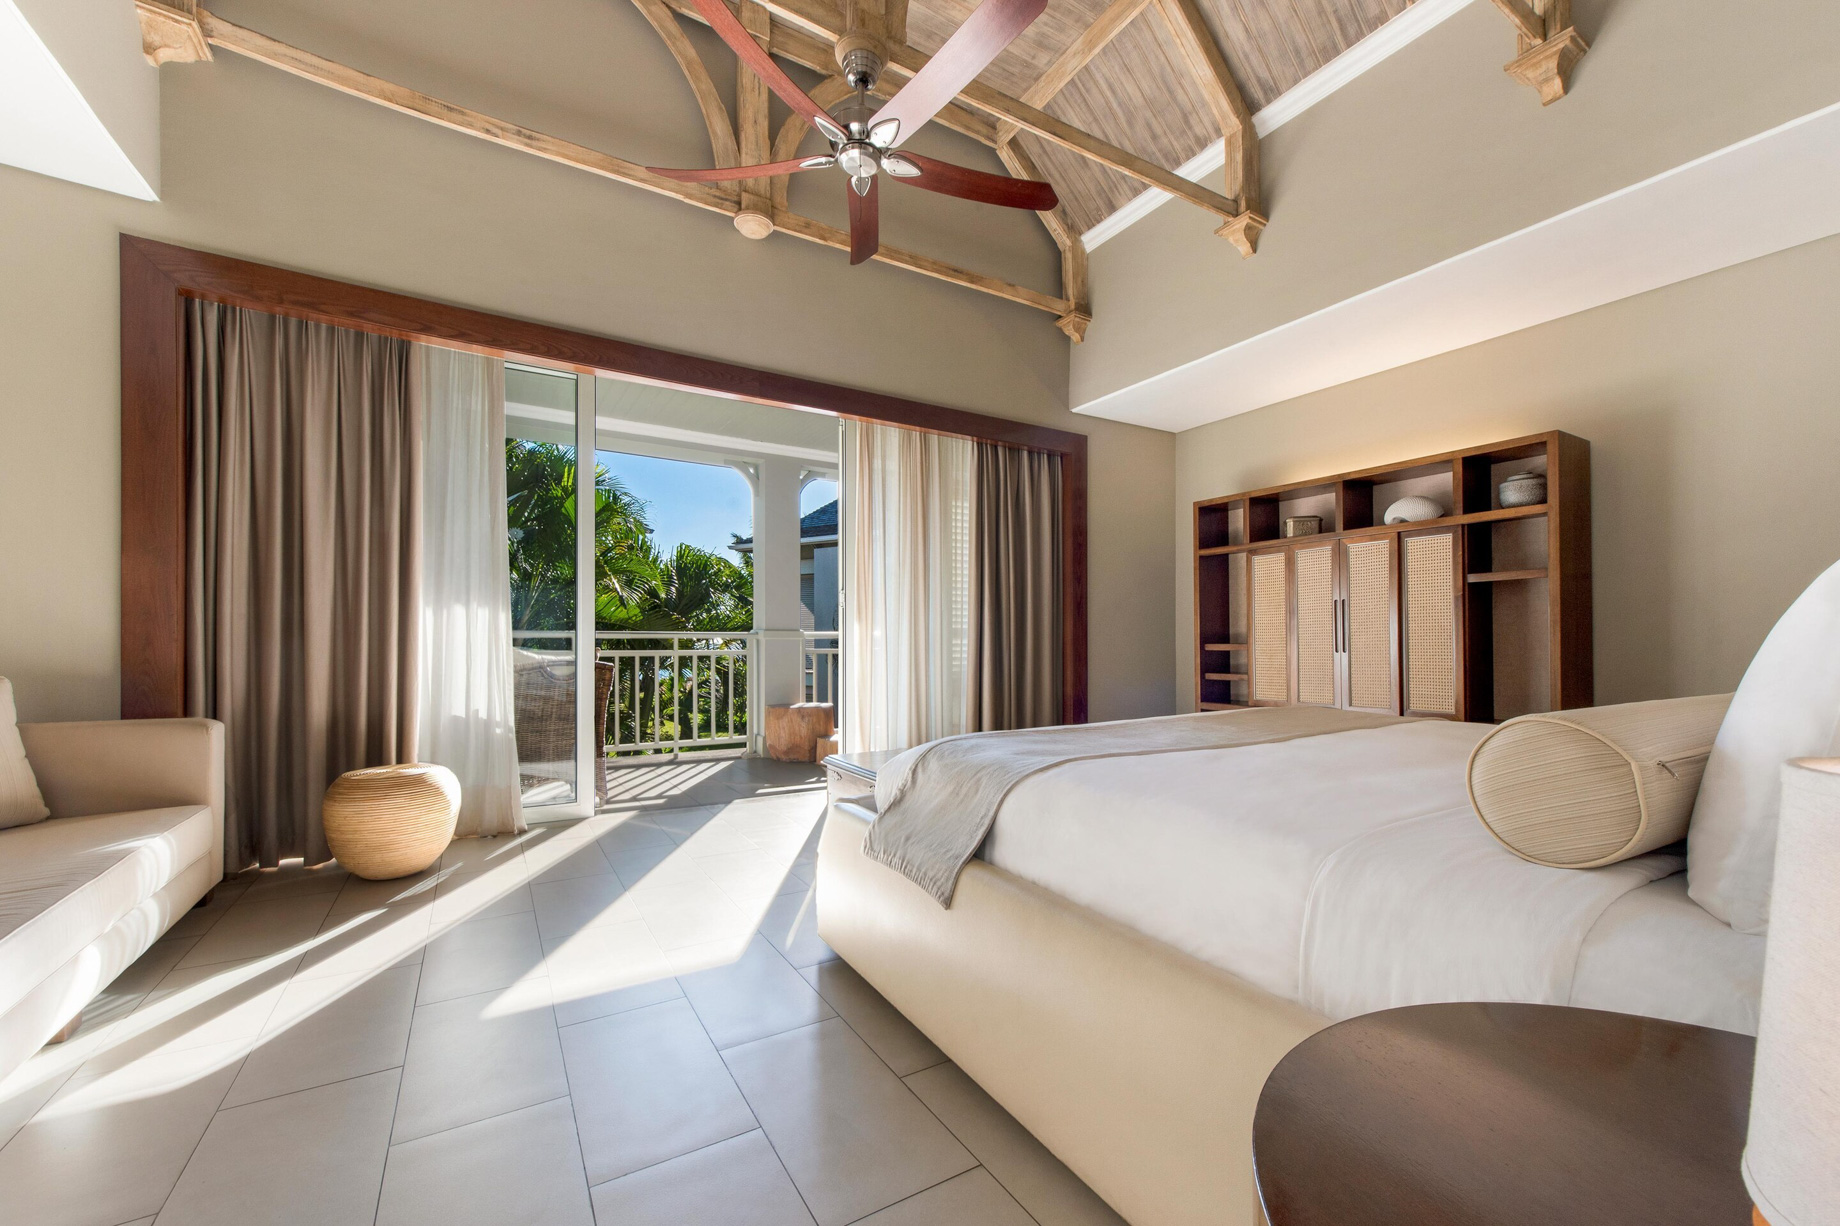 JW Marriott Mauritius Resort - Mauritius - Junior Suite Upper Floor